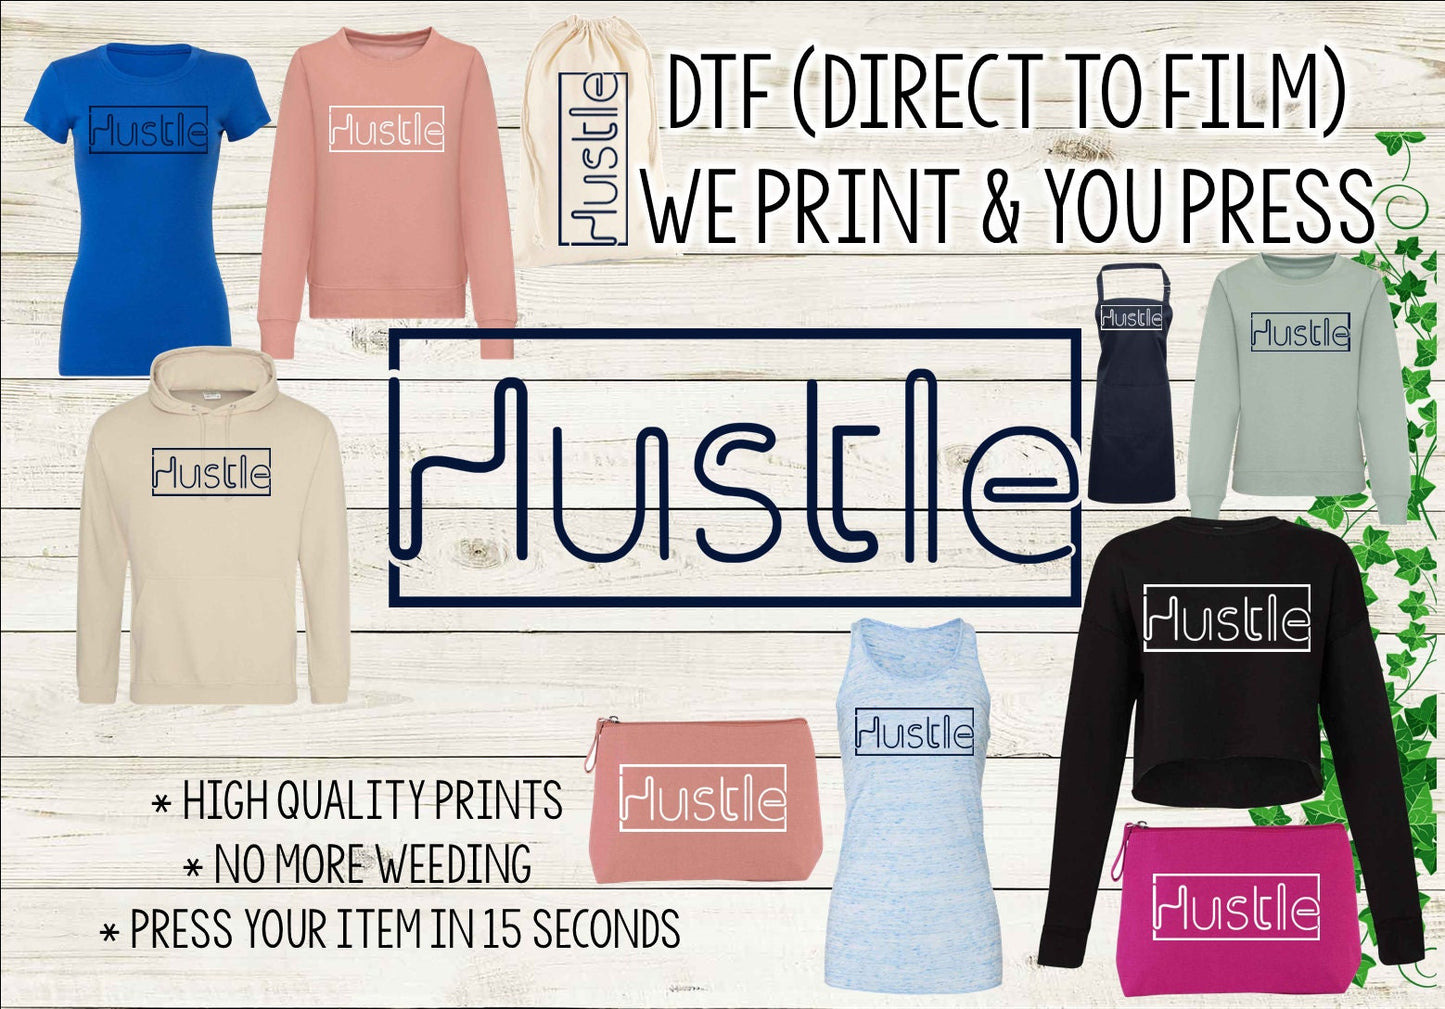 DTF Transfer: "Hustle" Design